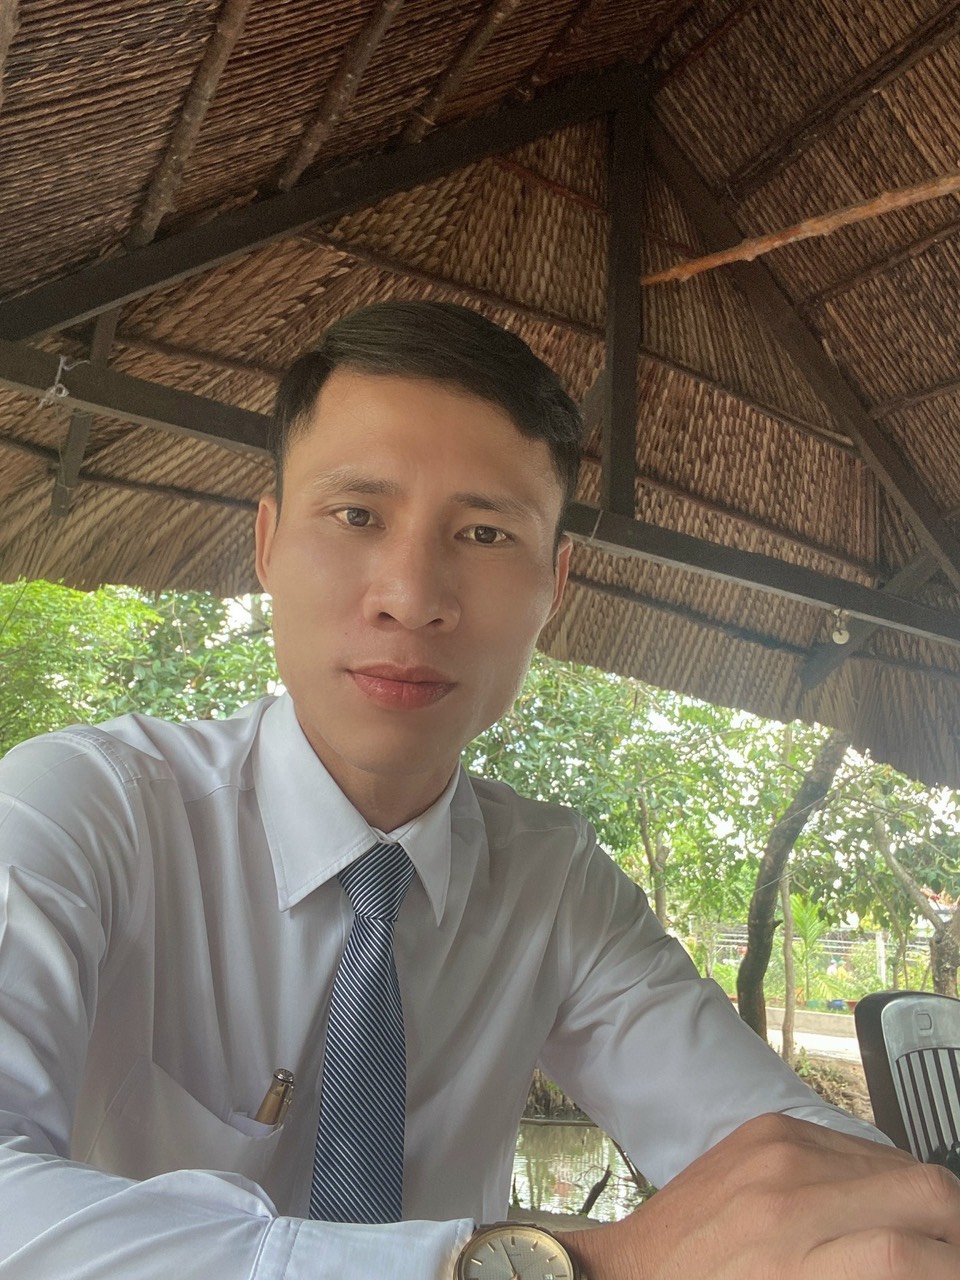 ZALO LUAT SU DONG NAI - Số zalo Luật sư Đồng Nai